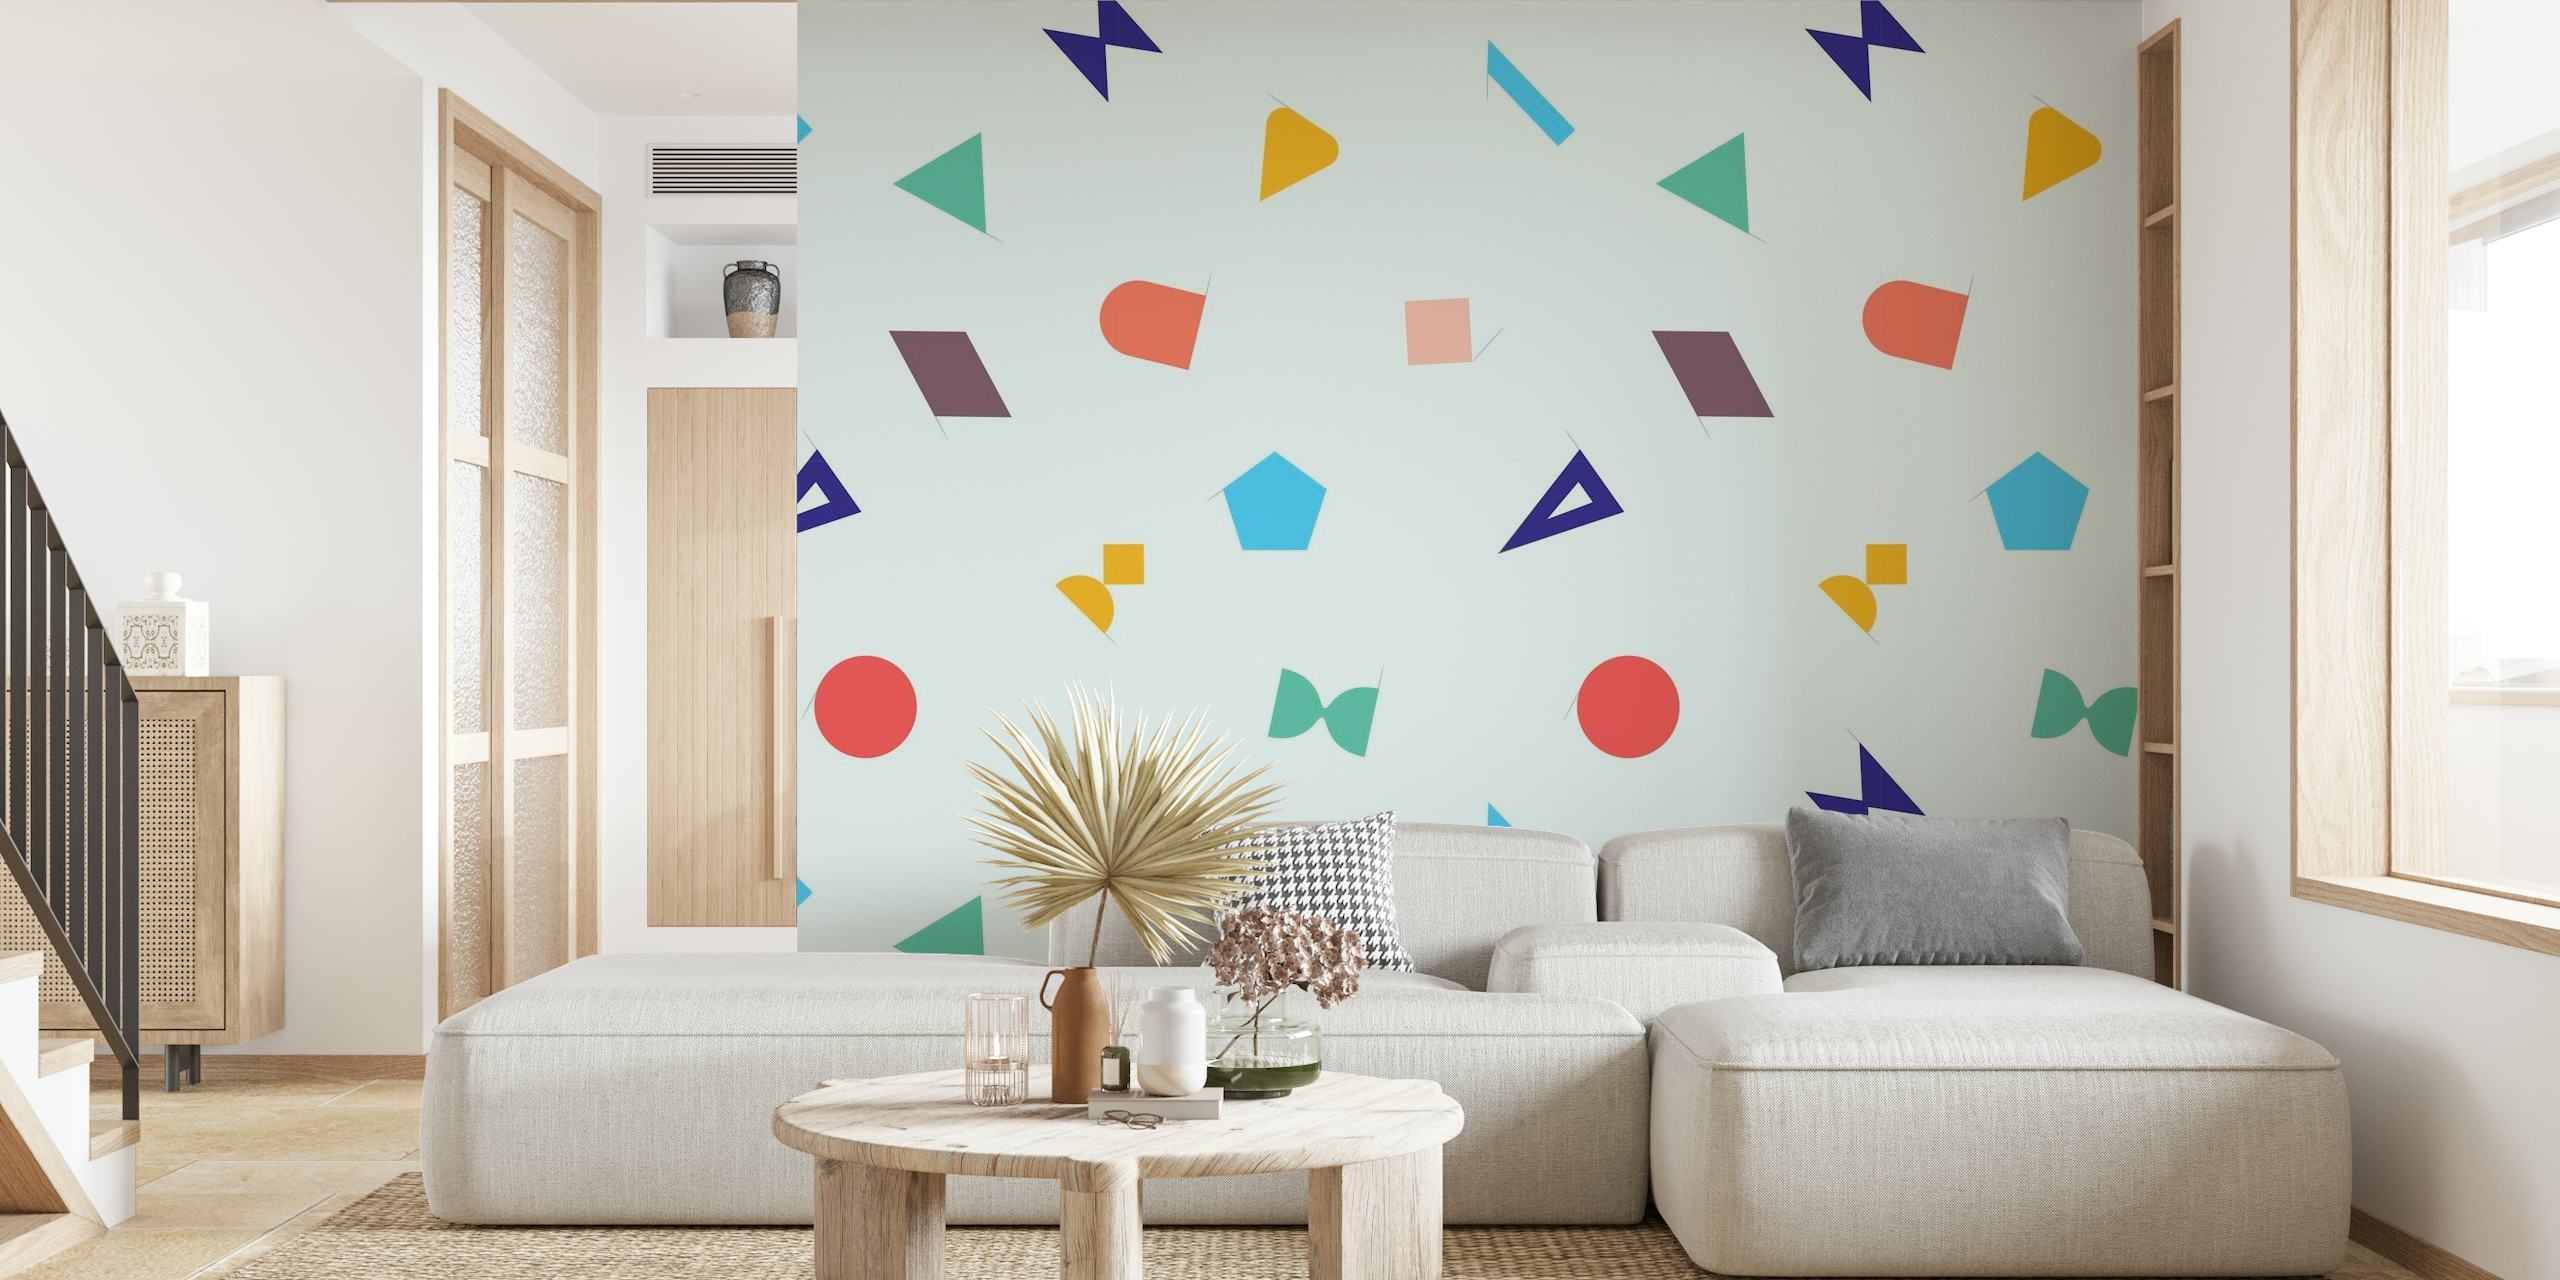 Geo II abstracte geometrische vormen muurschildering met pastelkleuren